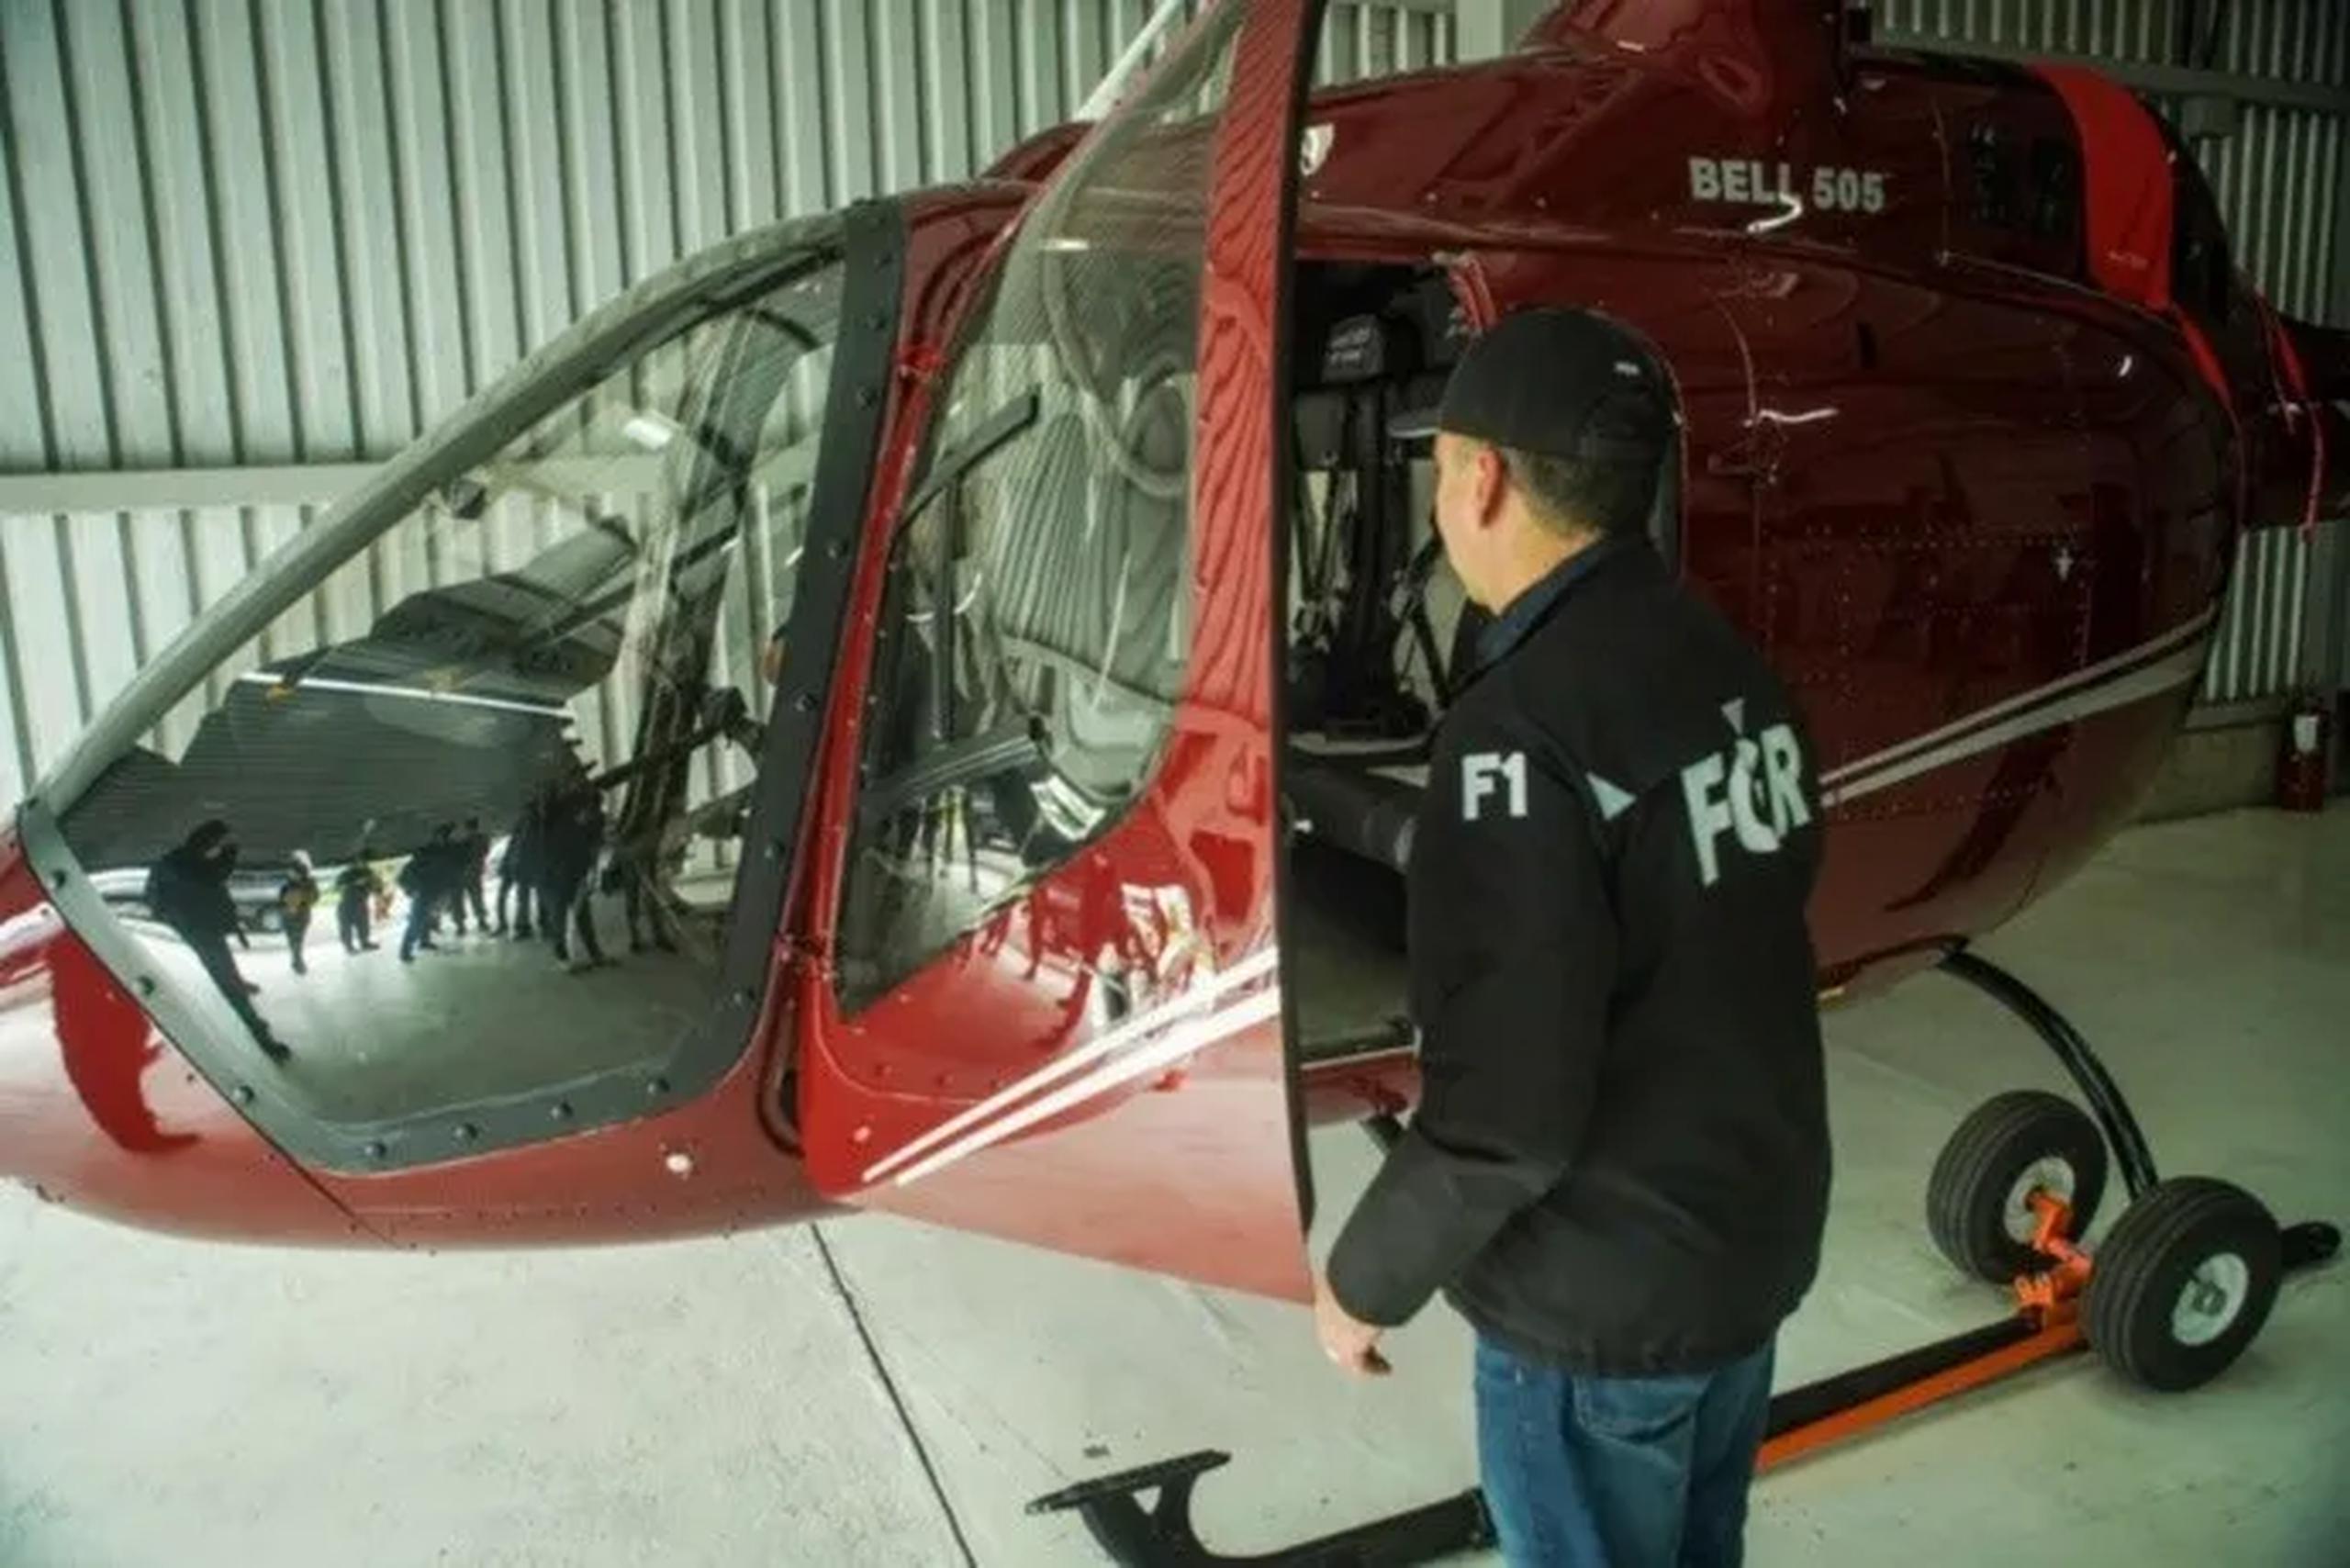 El valor del helicóptero Bell 505 con sólo 90 horas de vuelo fue valorado en $.1.3 millones.